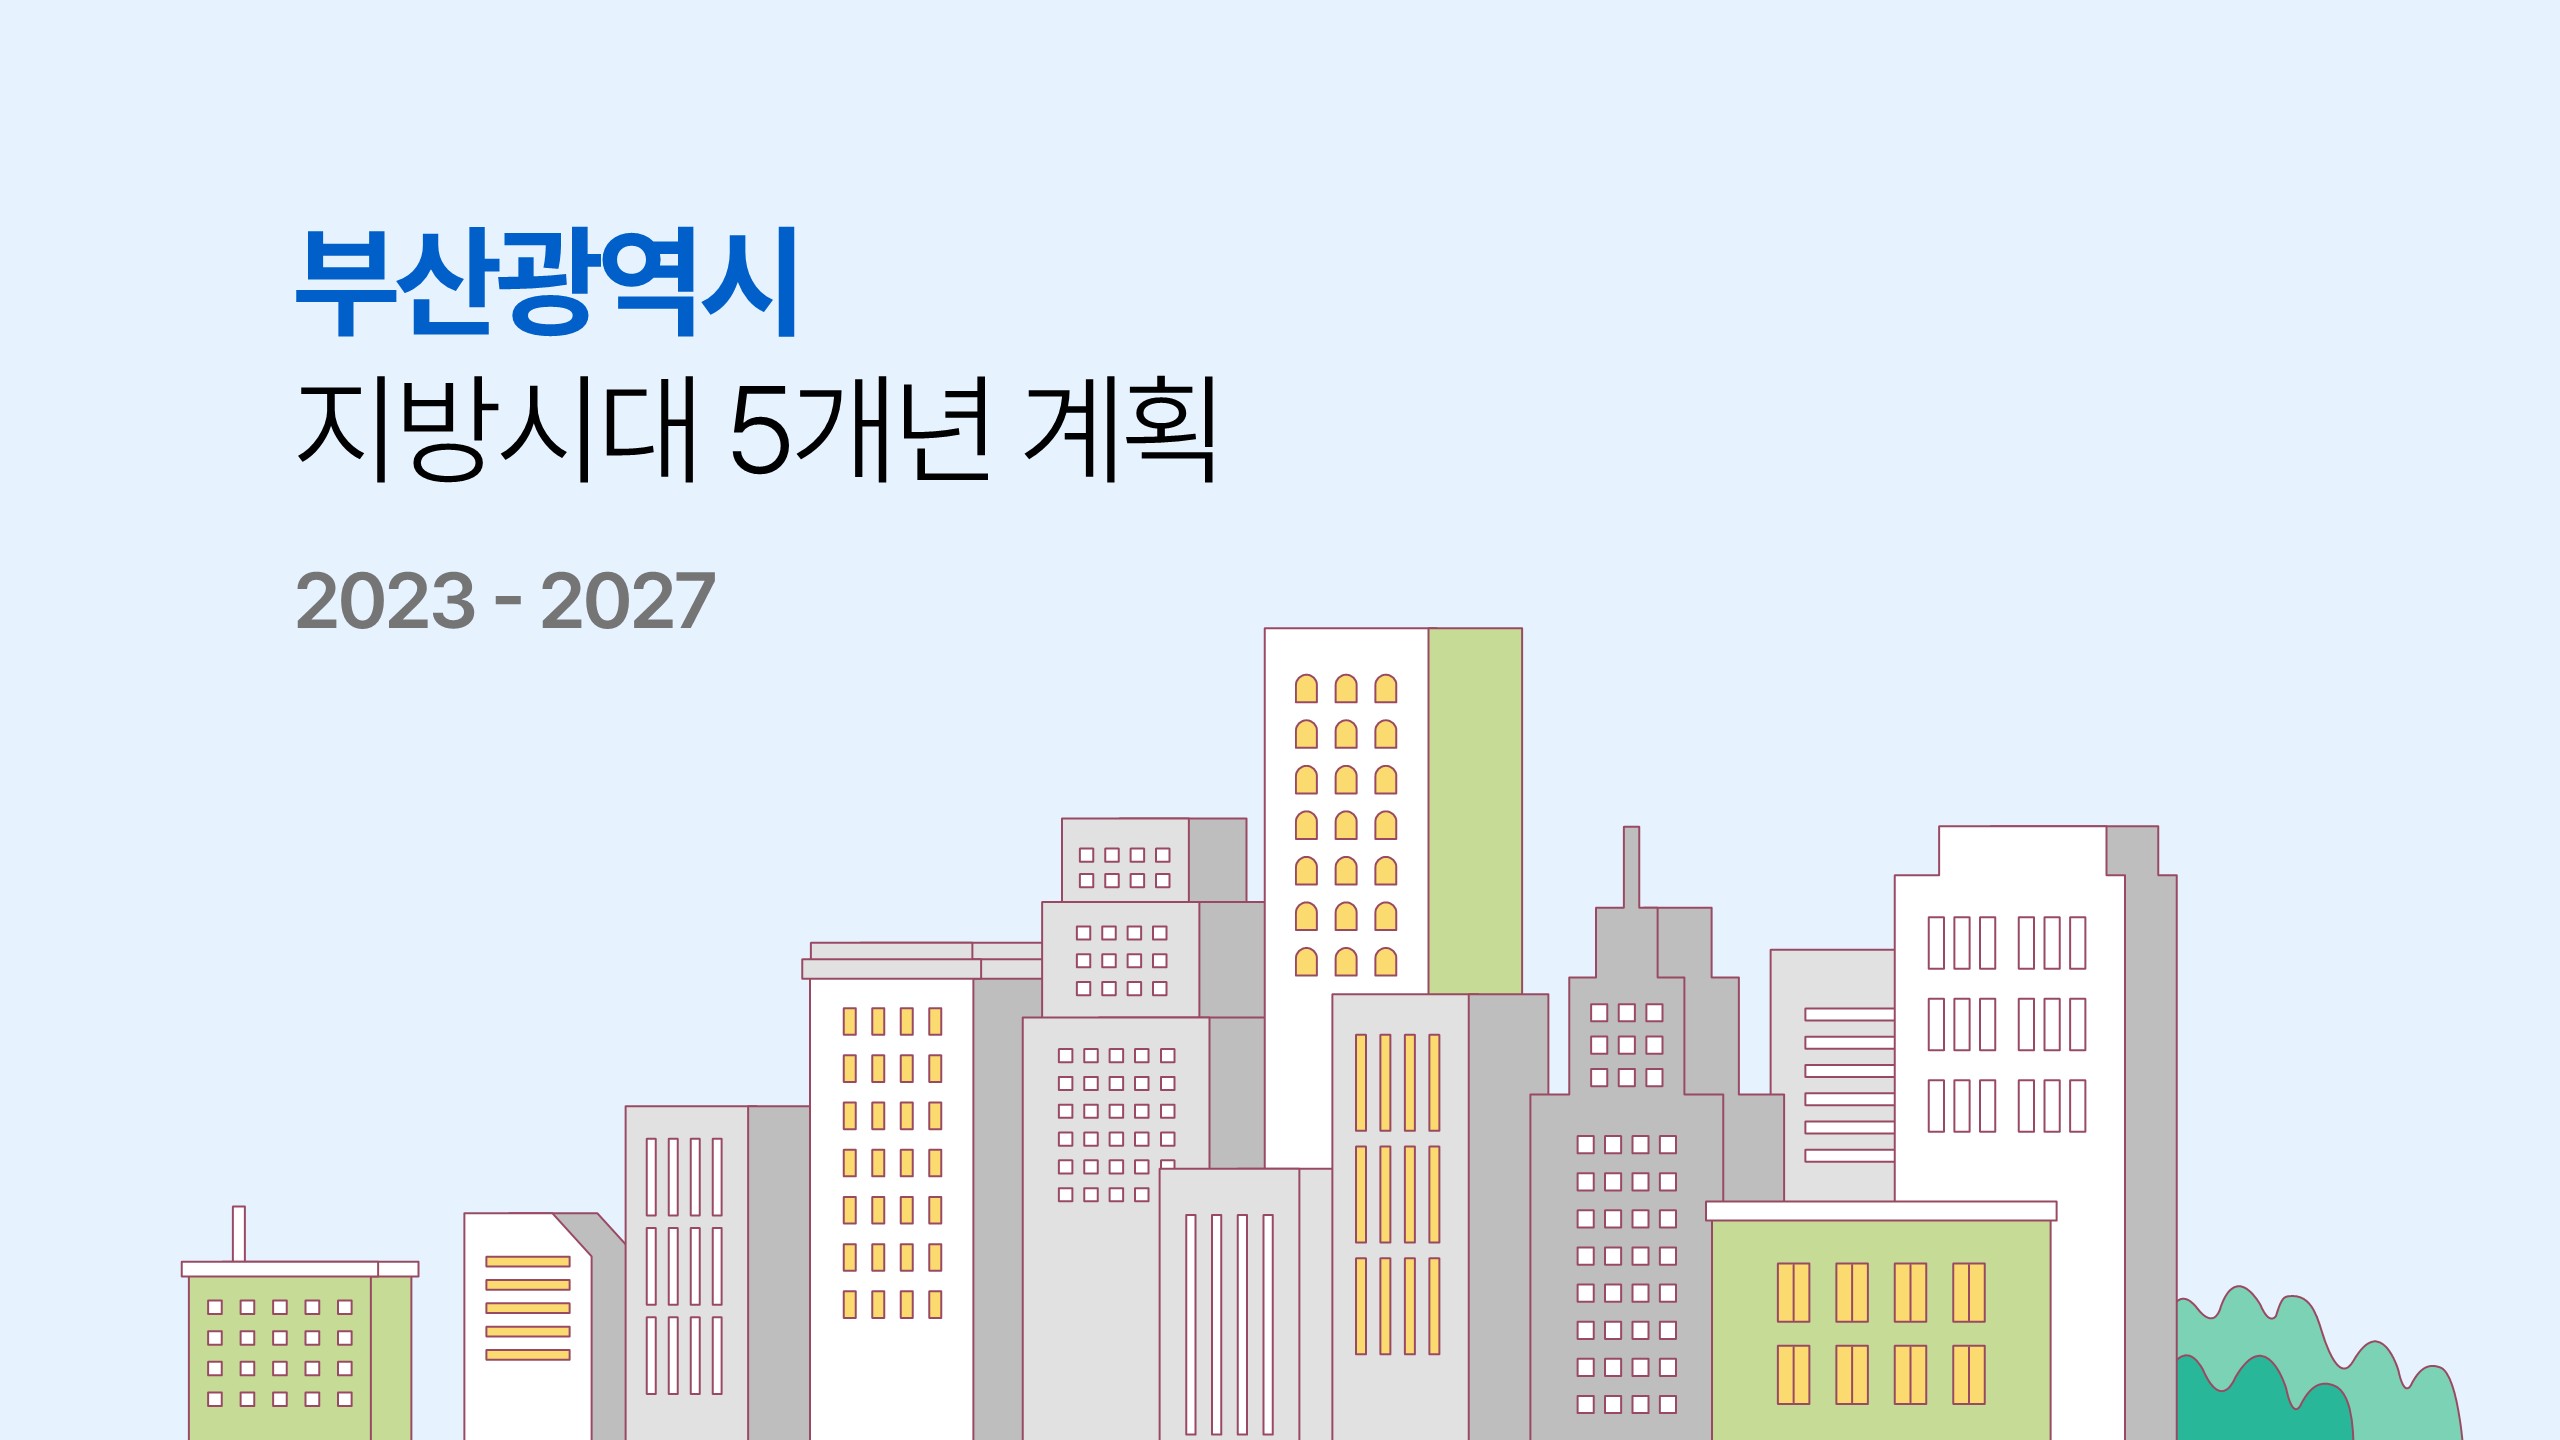 부산광역시 지방시대 5개년 계획 2023-2027